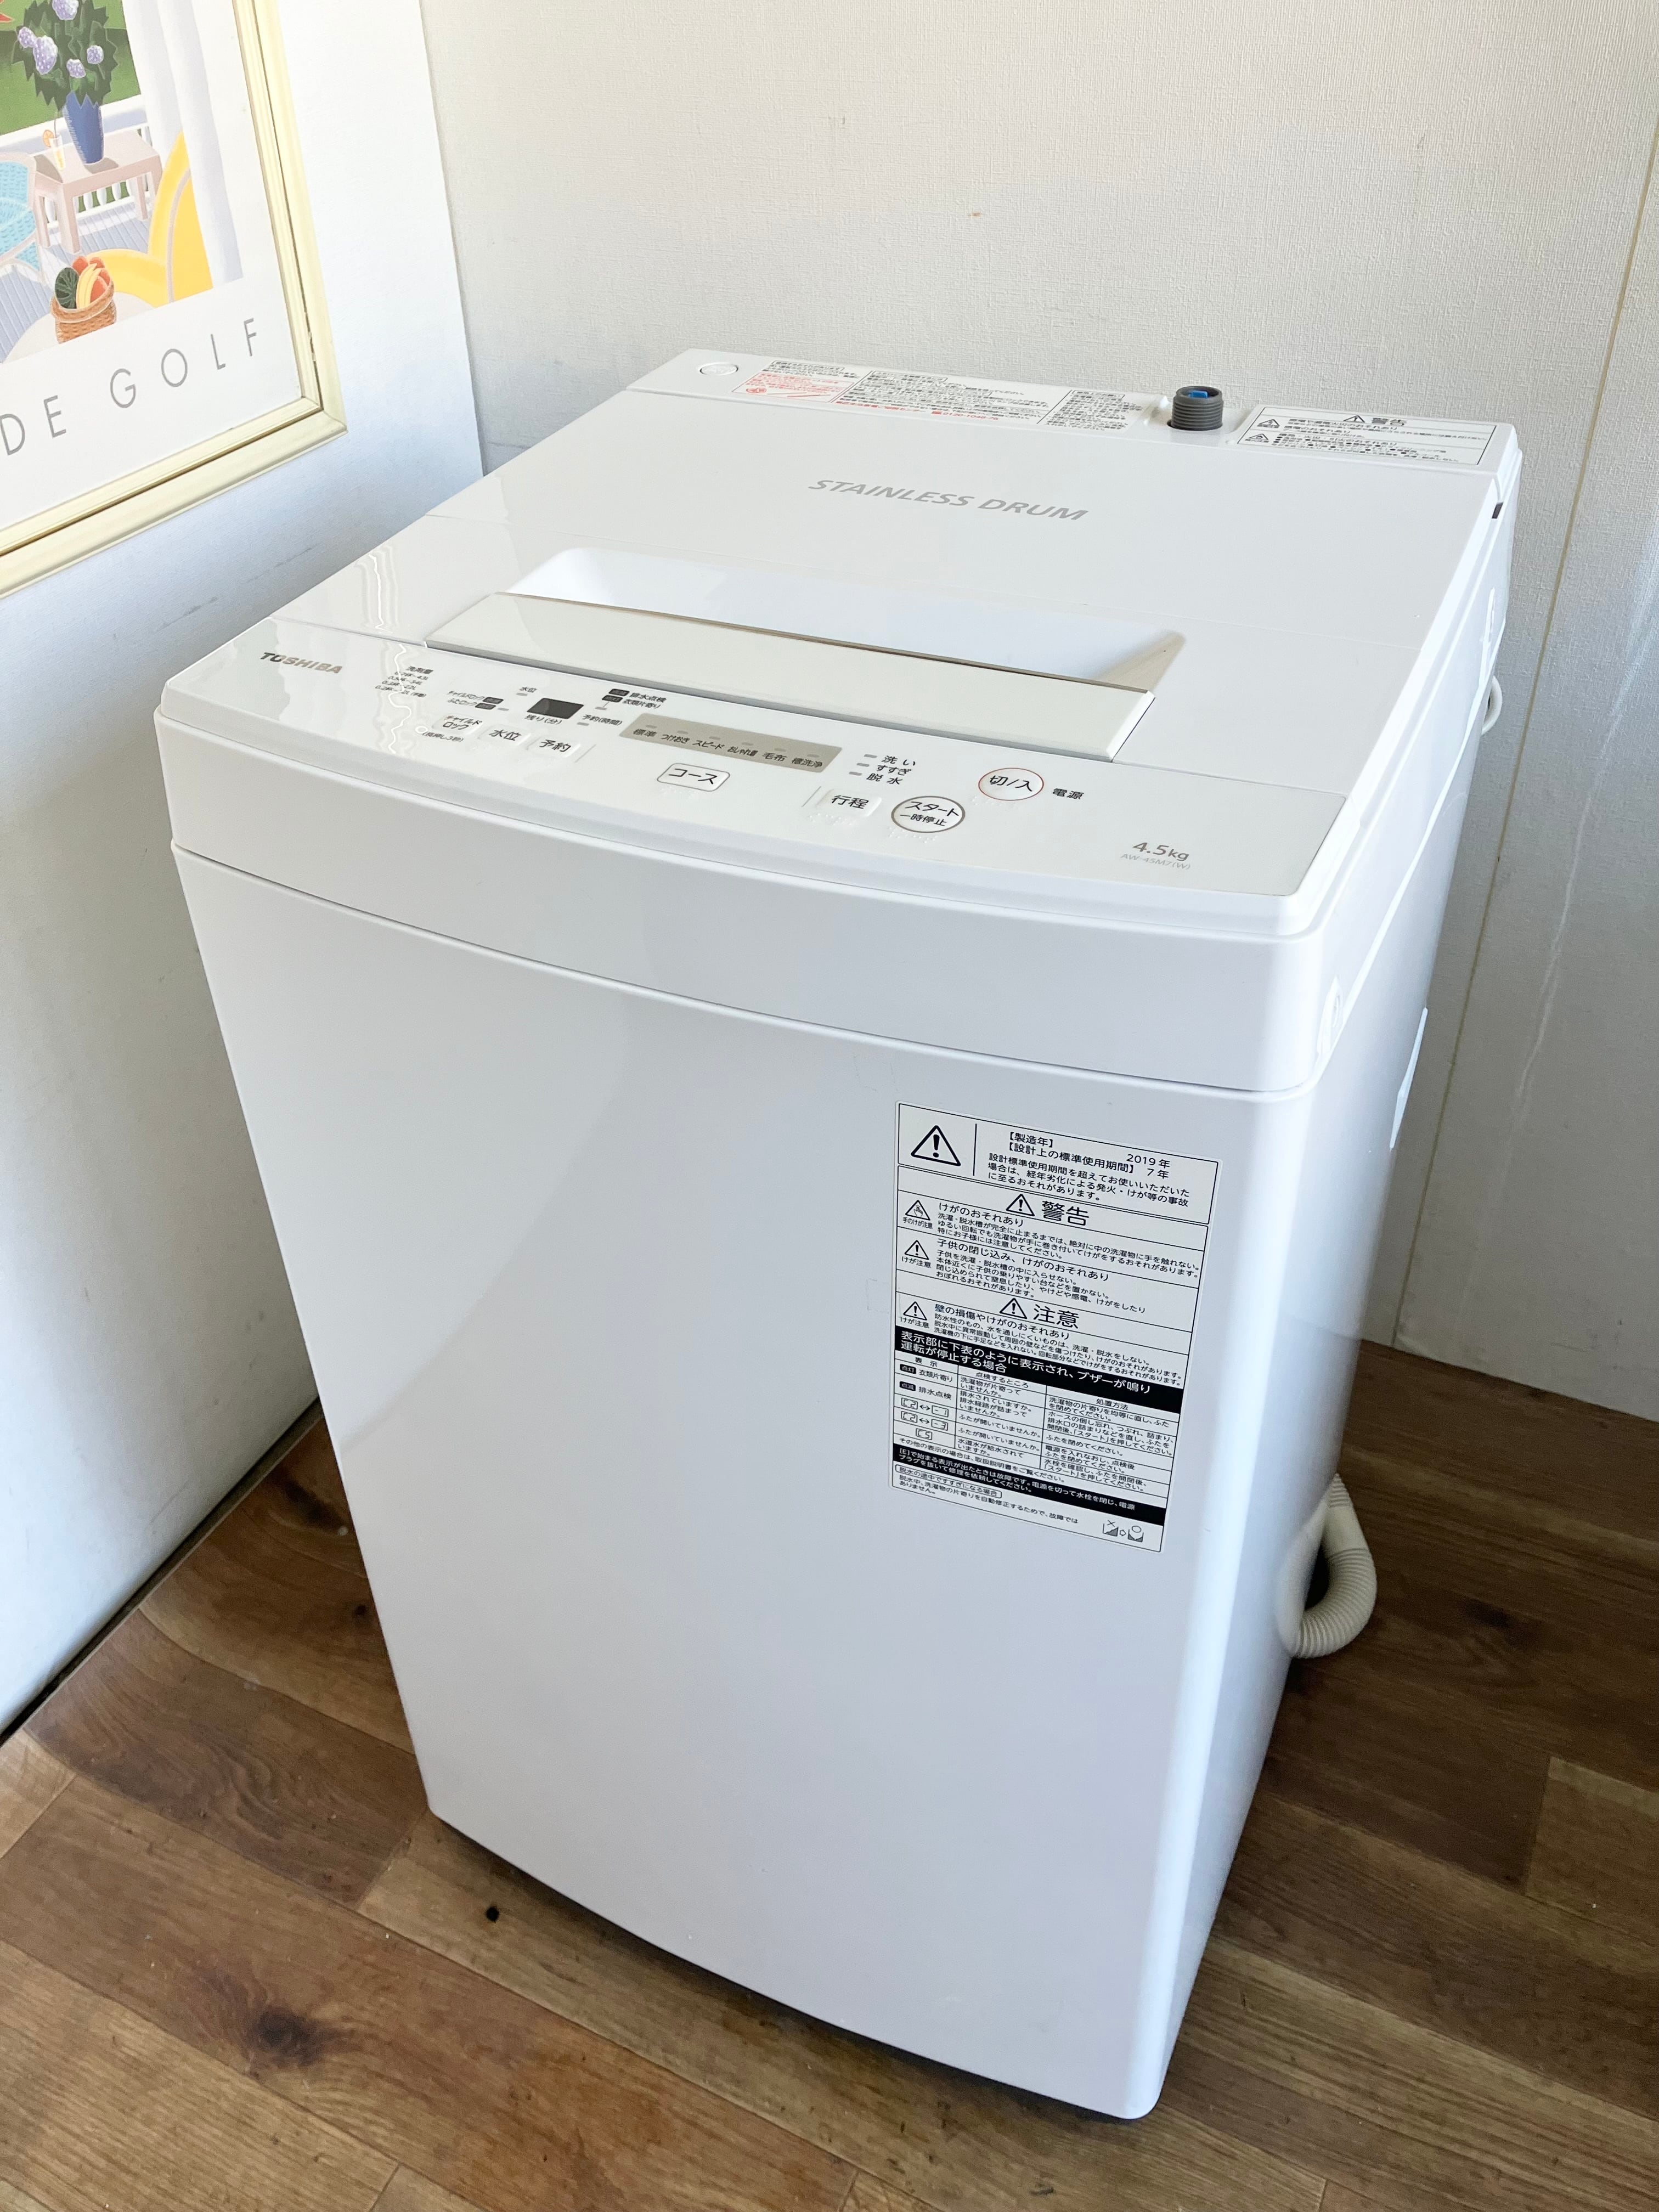 2019年製 4.5kg TOSHIBA 洗濯機 | 中村区亀島リサイクルショップ 